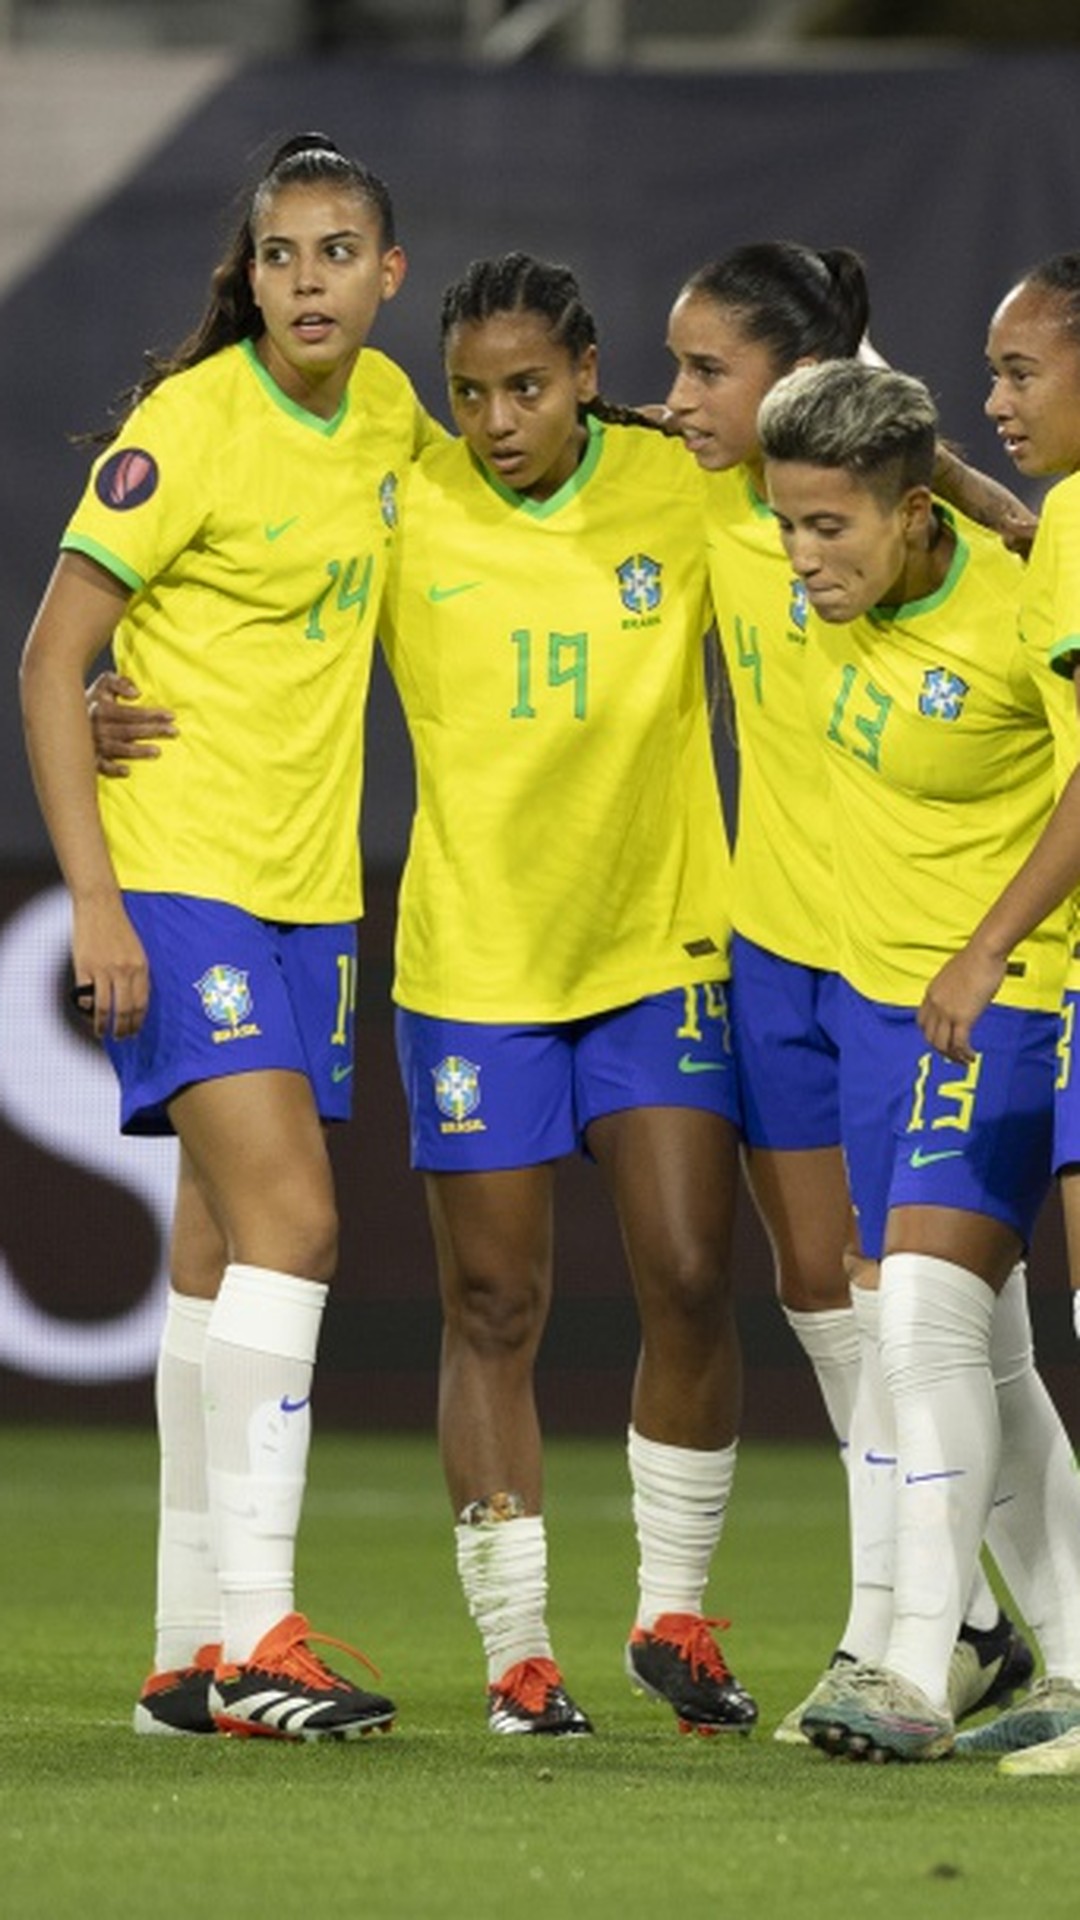 Triatlo feminino do Brasil coloca dupla no top 10 de etapa da Copa do Mundo